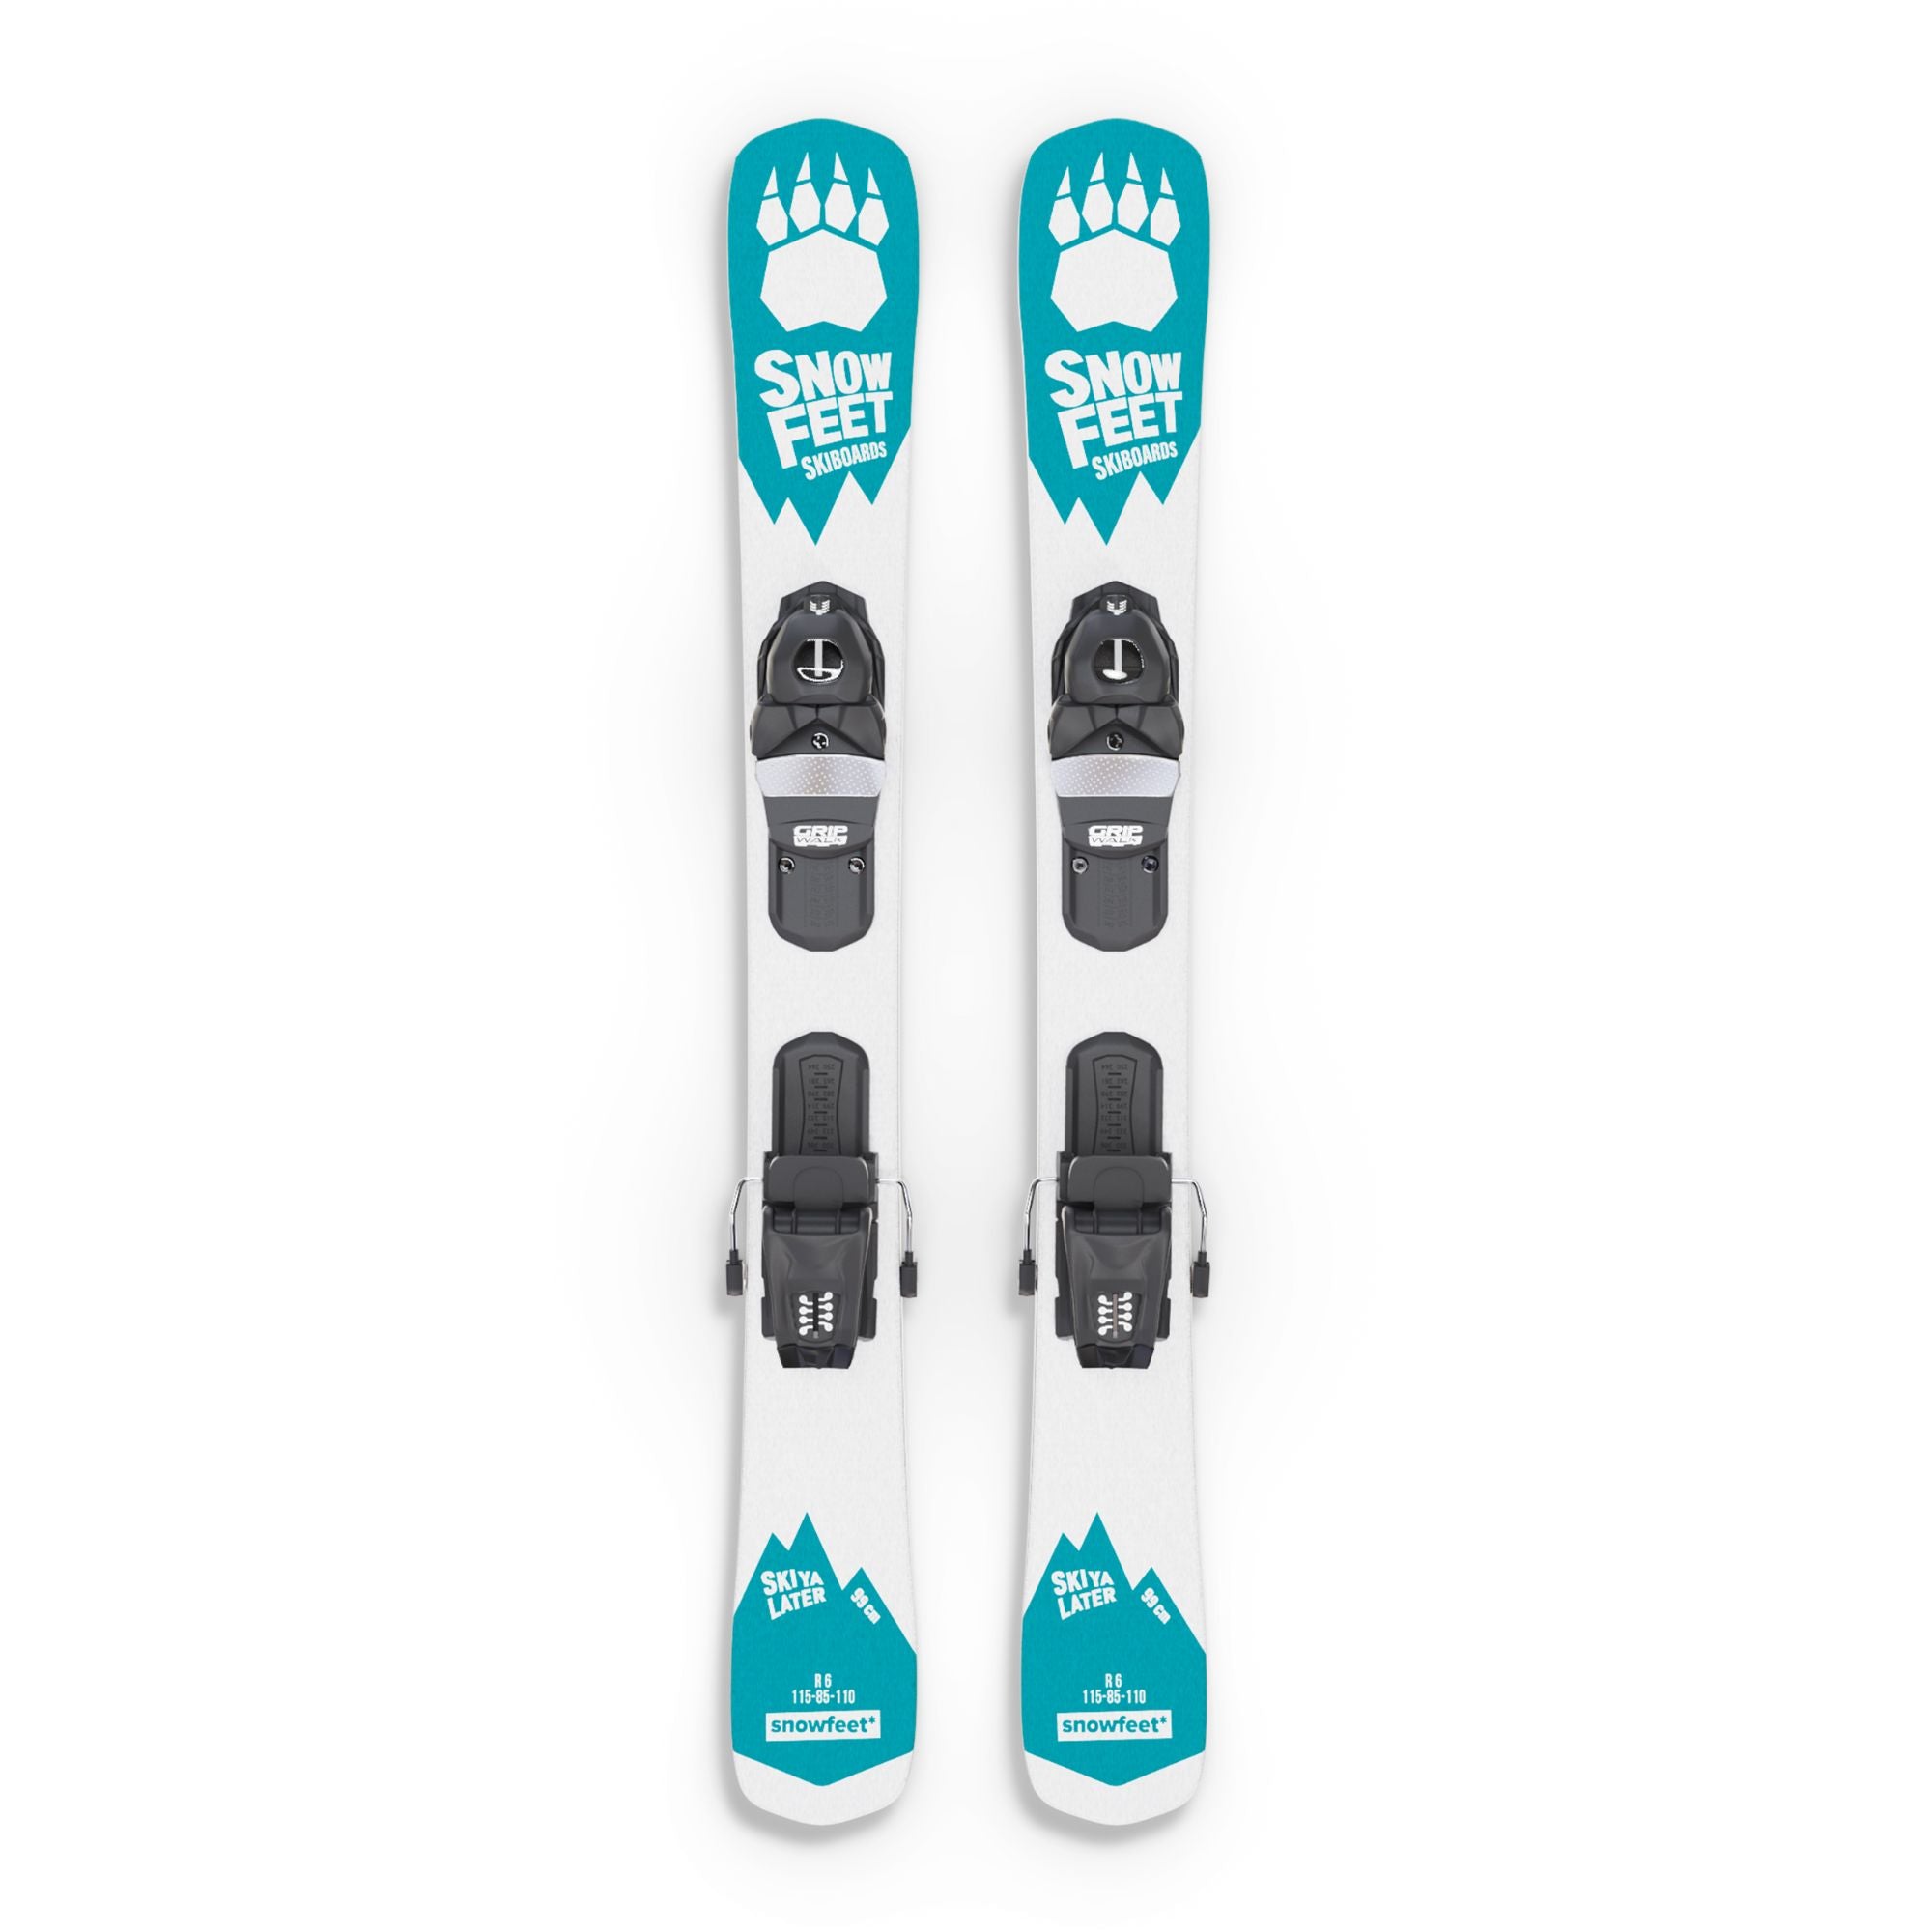 skiboards snowblades short ski 99 snowfeet mini little ski skiblades with profi ski releasable bindings blue turquoise